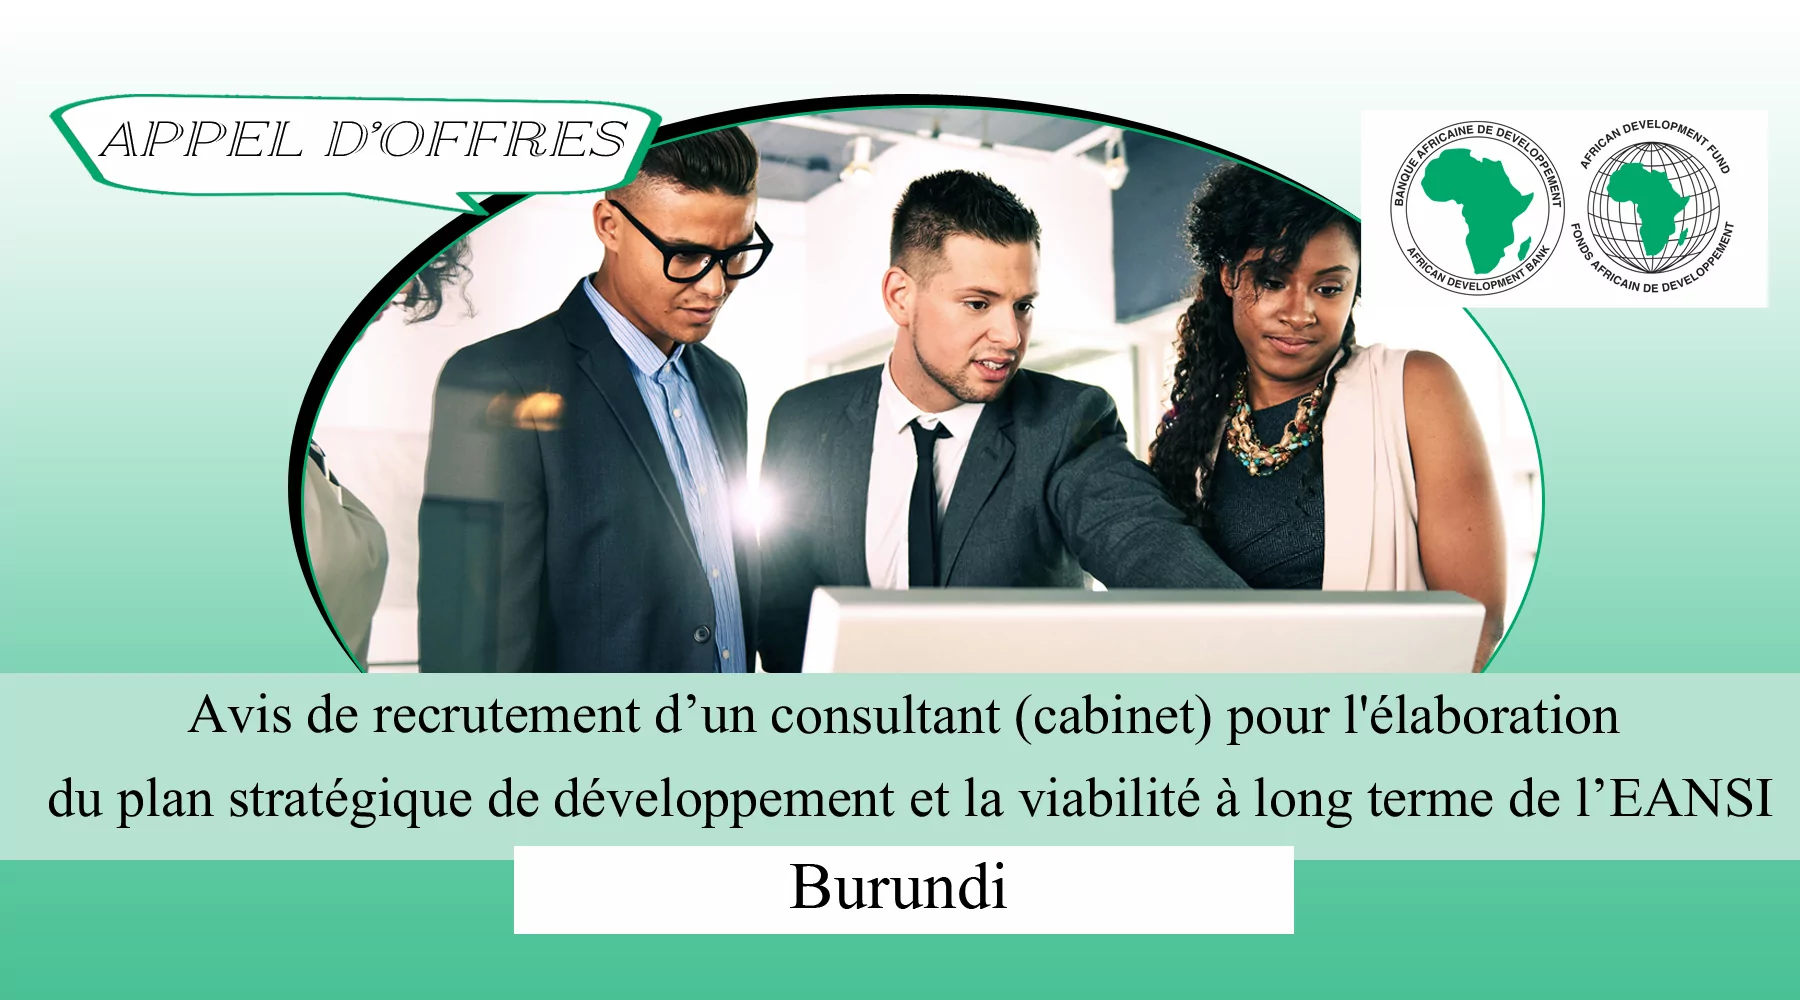 Avis de recrutement d’un consultant (cabinet) pour l’élaboration du plan stratégique de développement et la viabilité à long terme de l’EANSI, Burundi